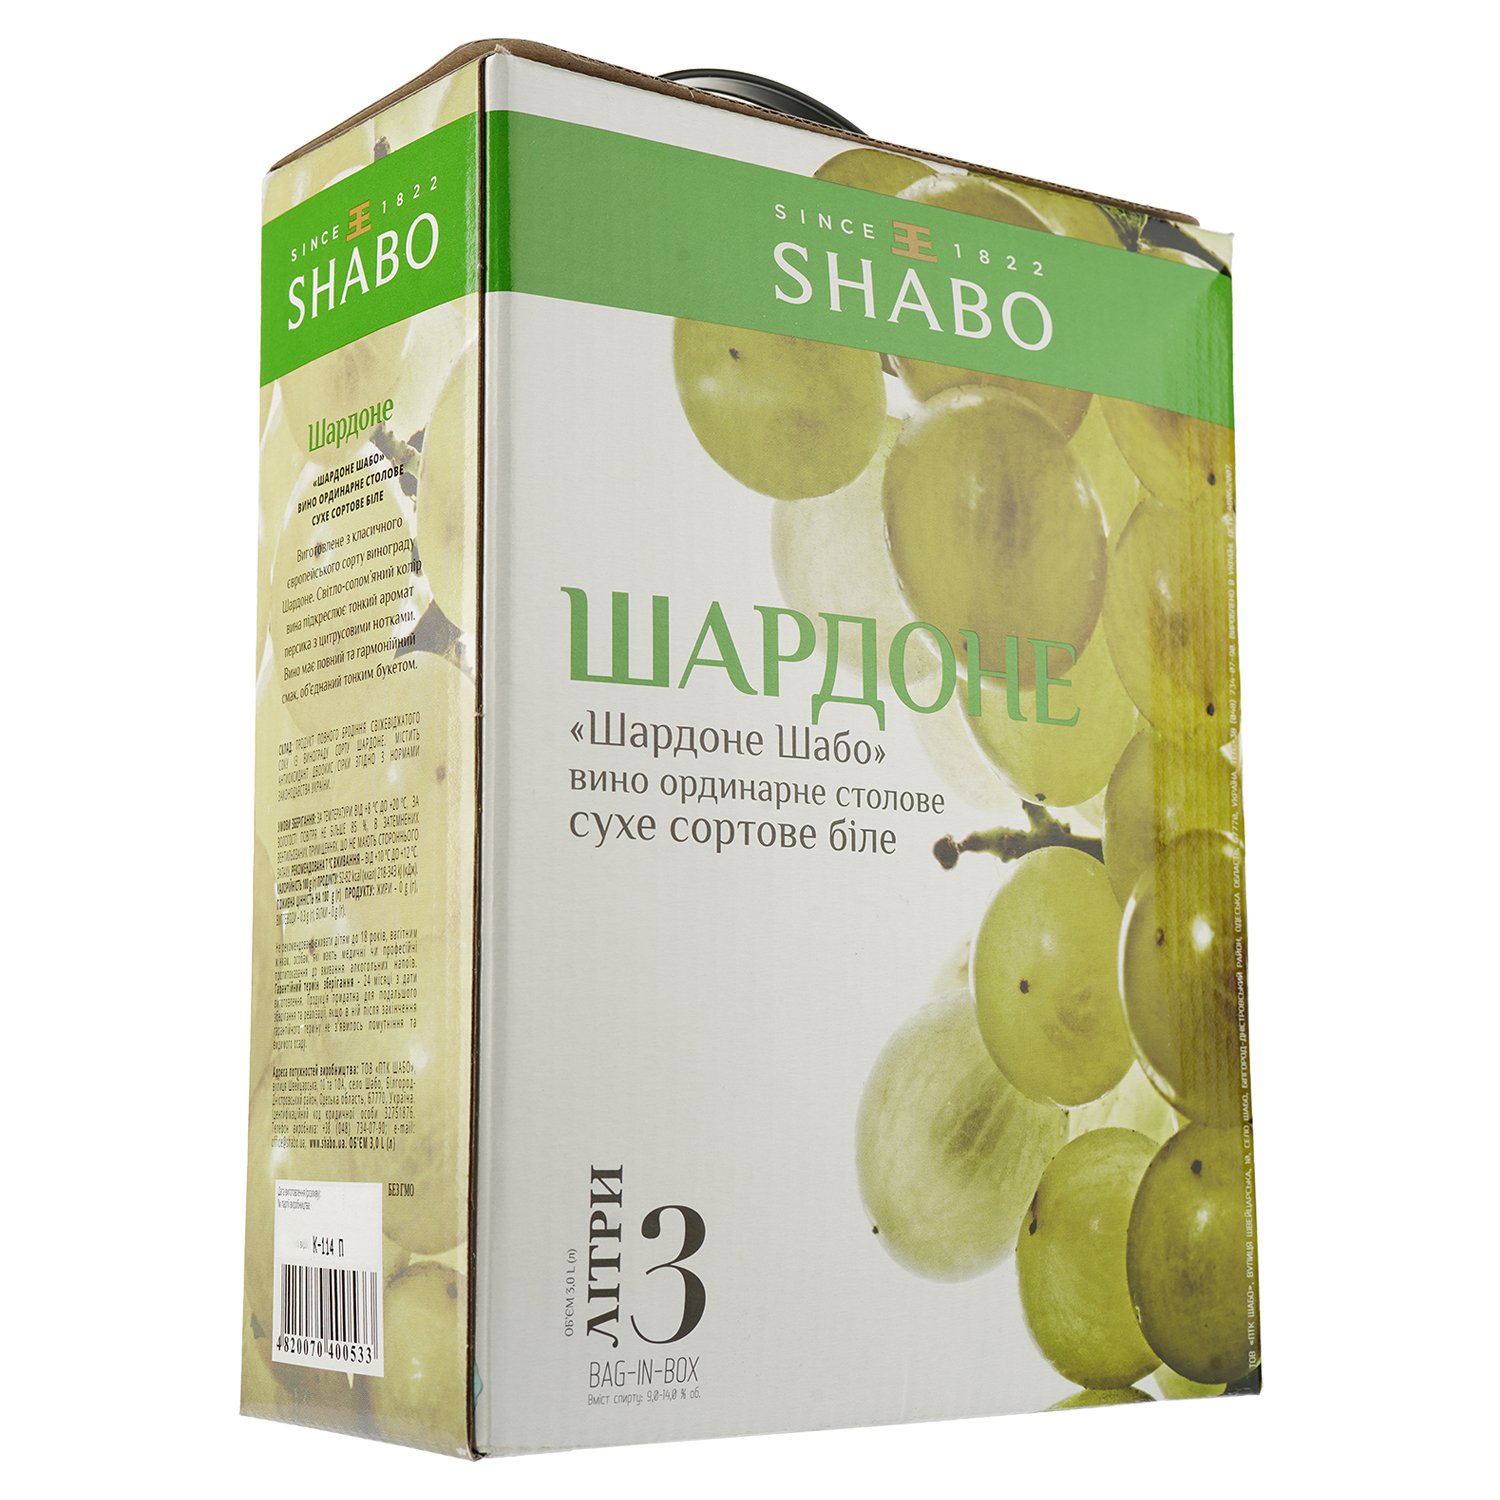 Вино Shabo Шардоне, белое, сухое, Bag-in-Box, 9,5-14%, 3 л - фото 1